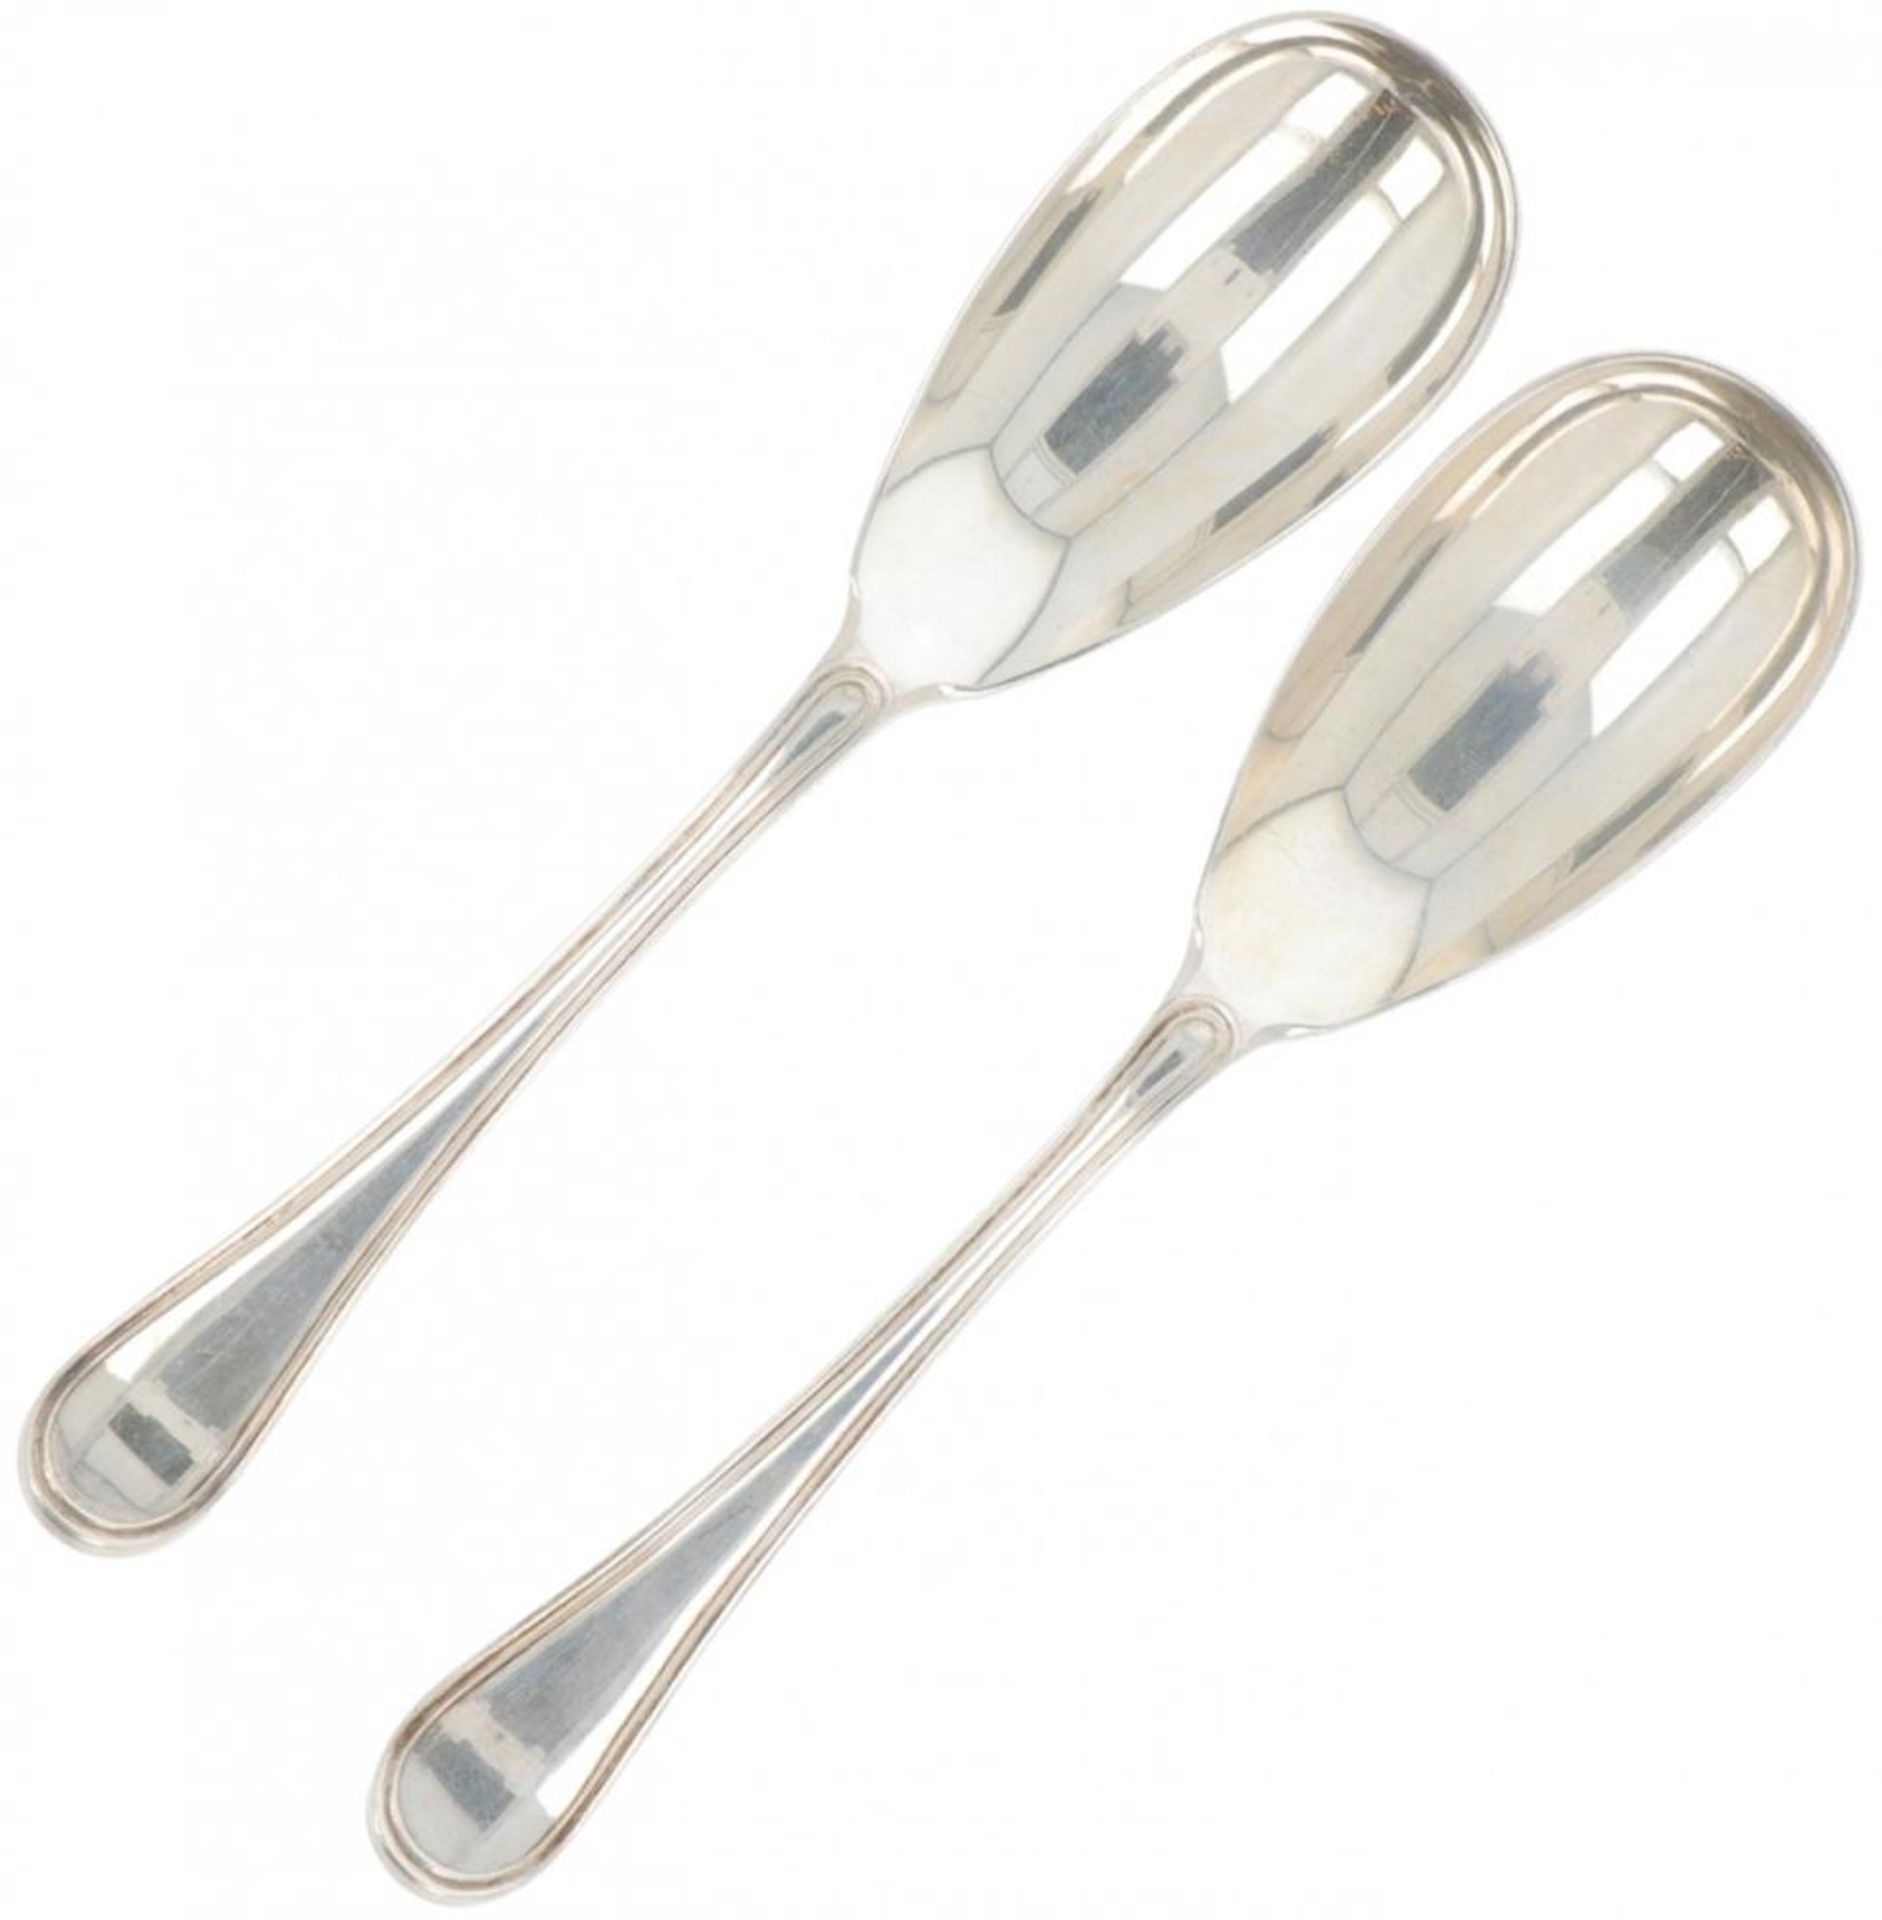 (2) piece silver cutlery.